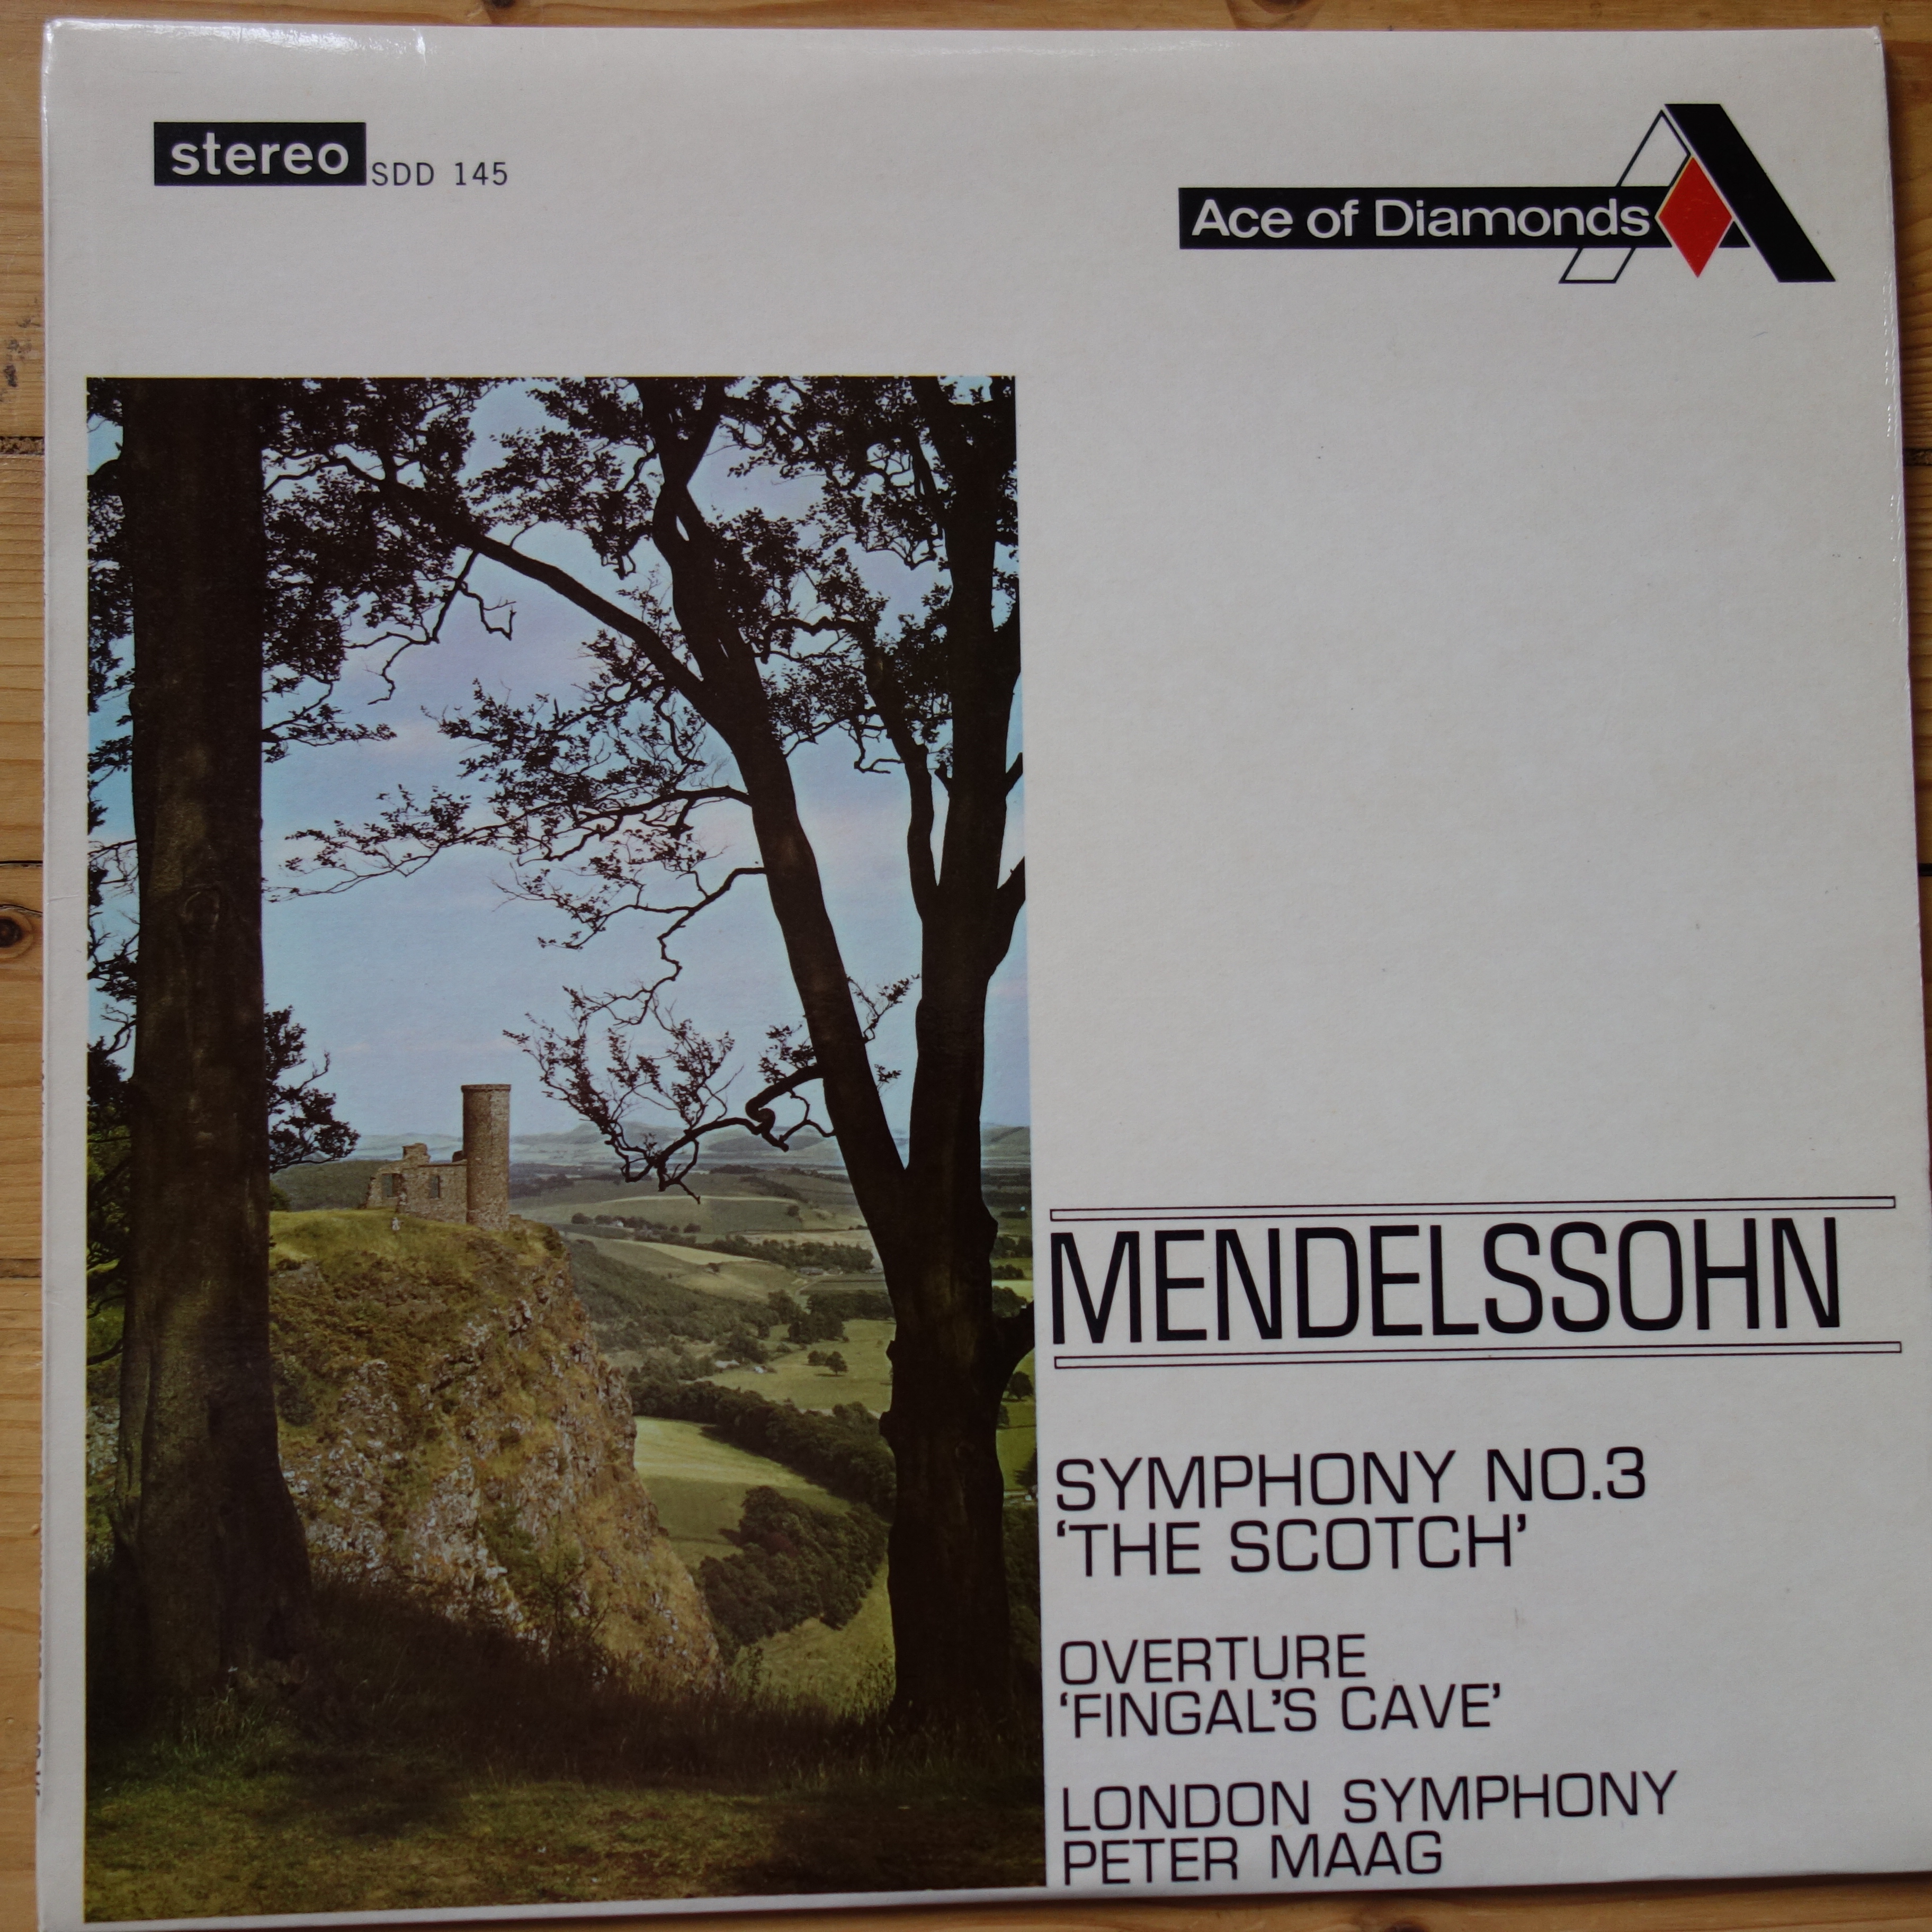 SDD 145 Mendelssohn Symphony No. 3 / Fingal's Cave